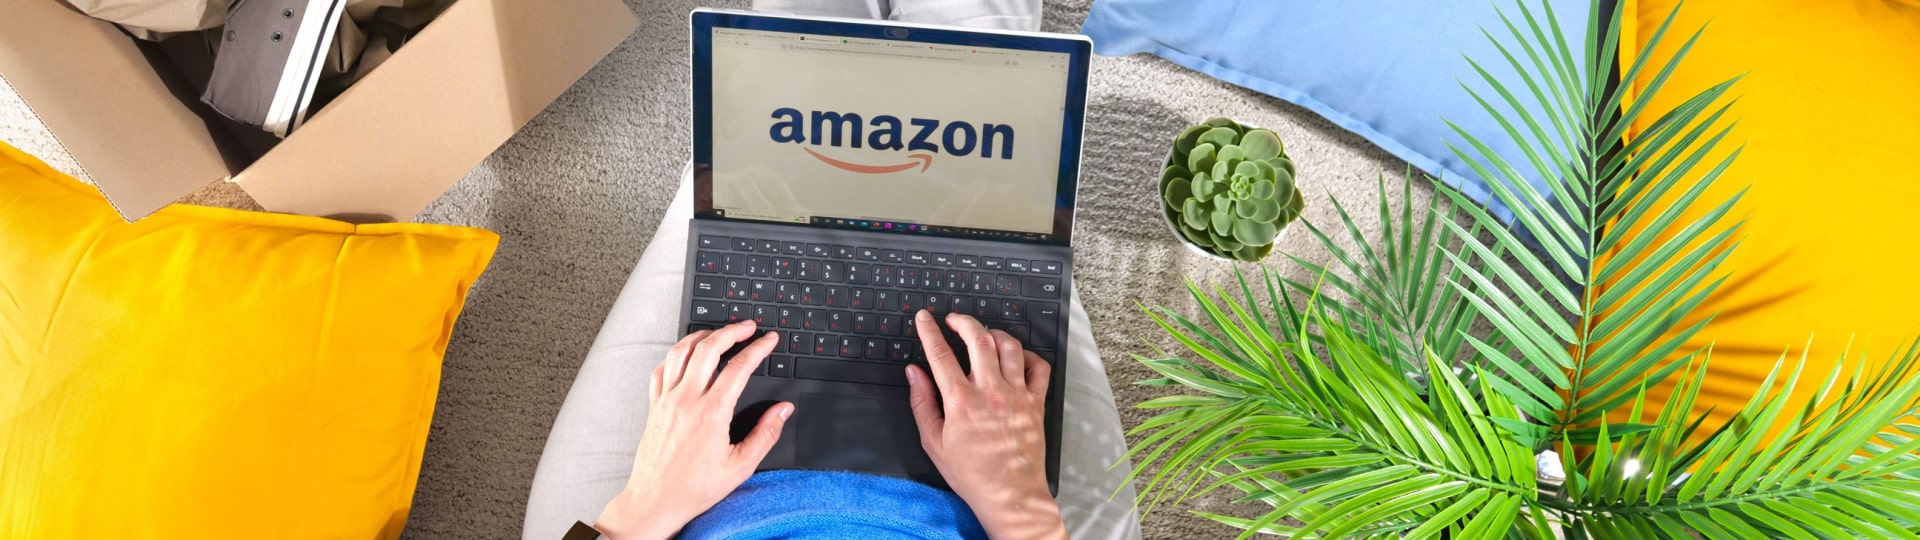 Amazon podle úřadů oklamal spotřebitele